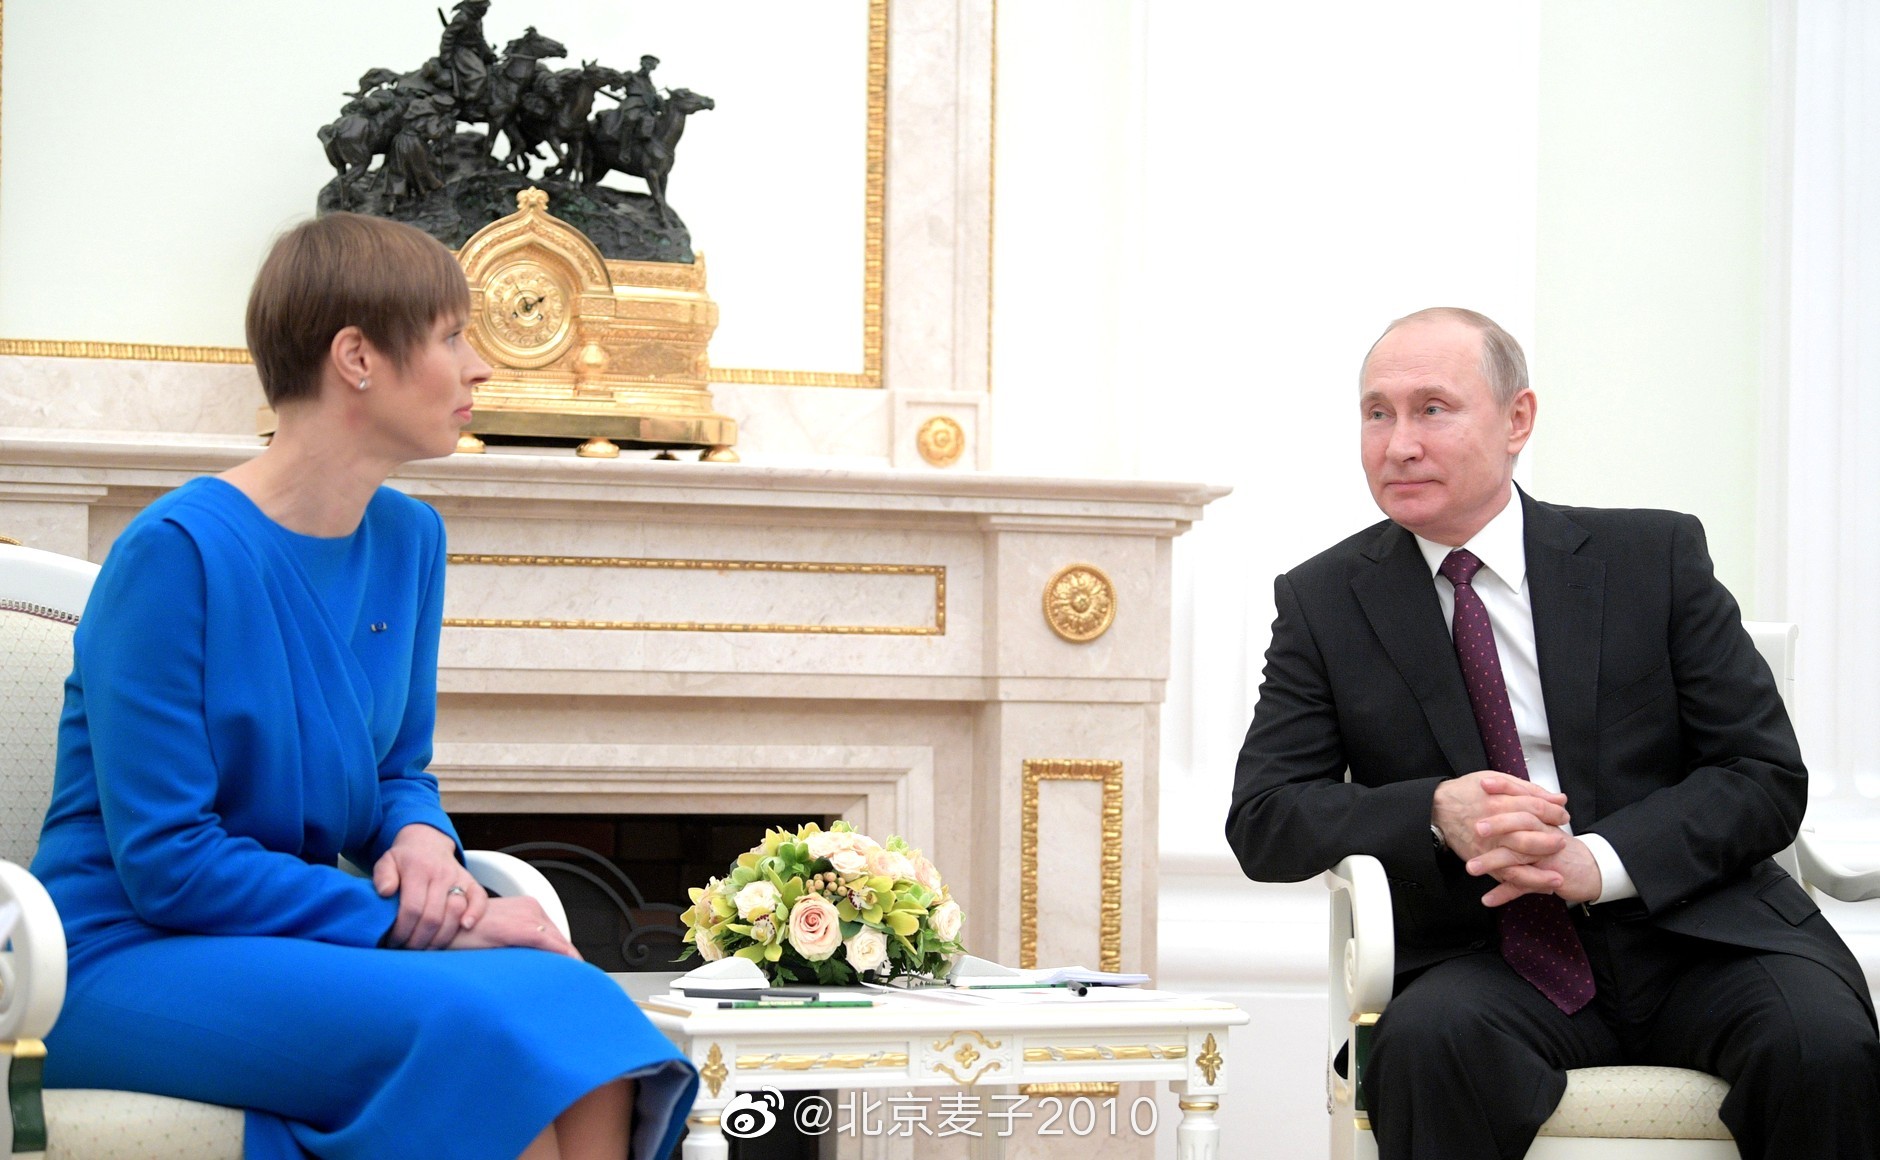 爱沙尼亚总统卡柳莱德访俄,普京:…我们很久没